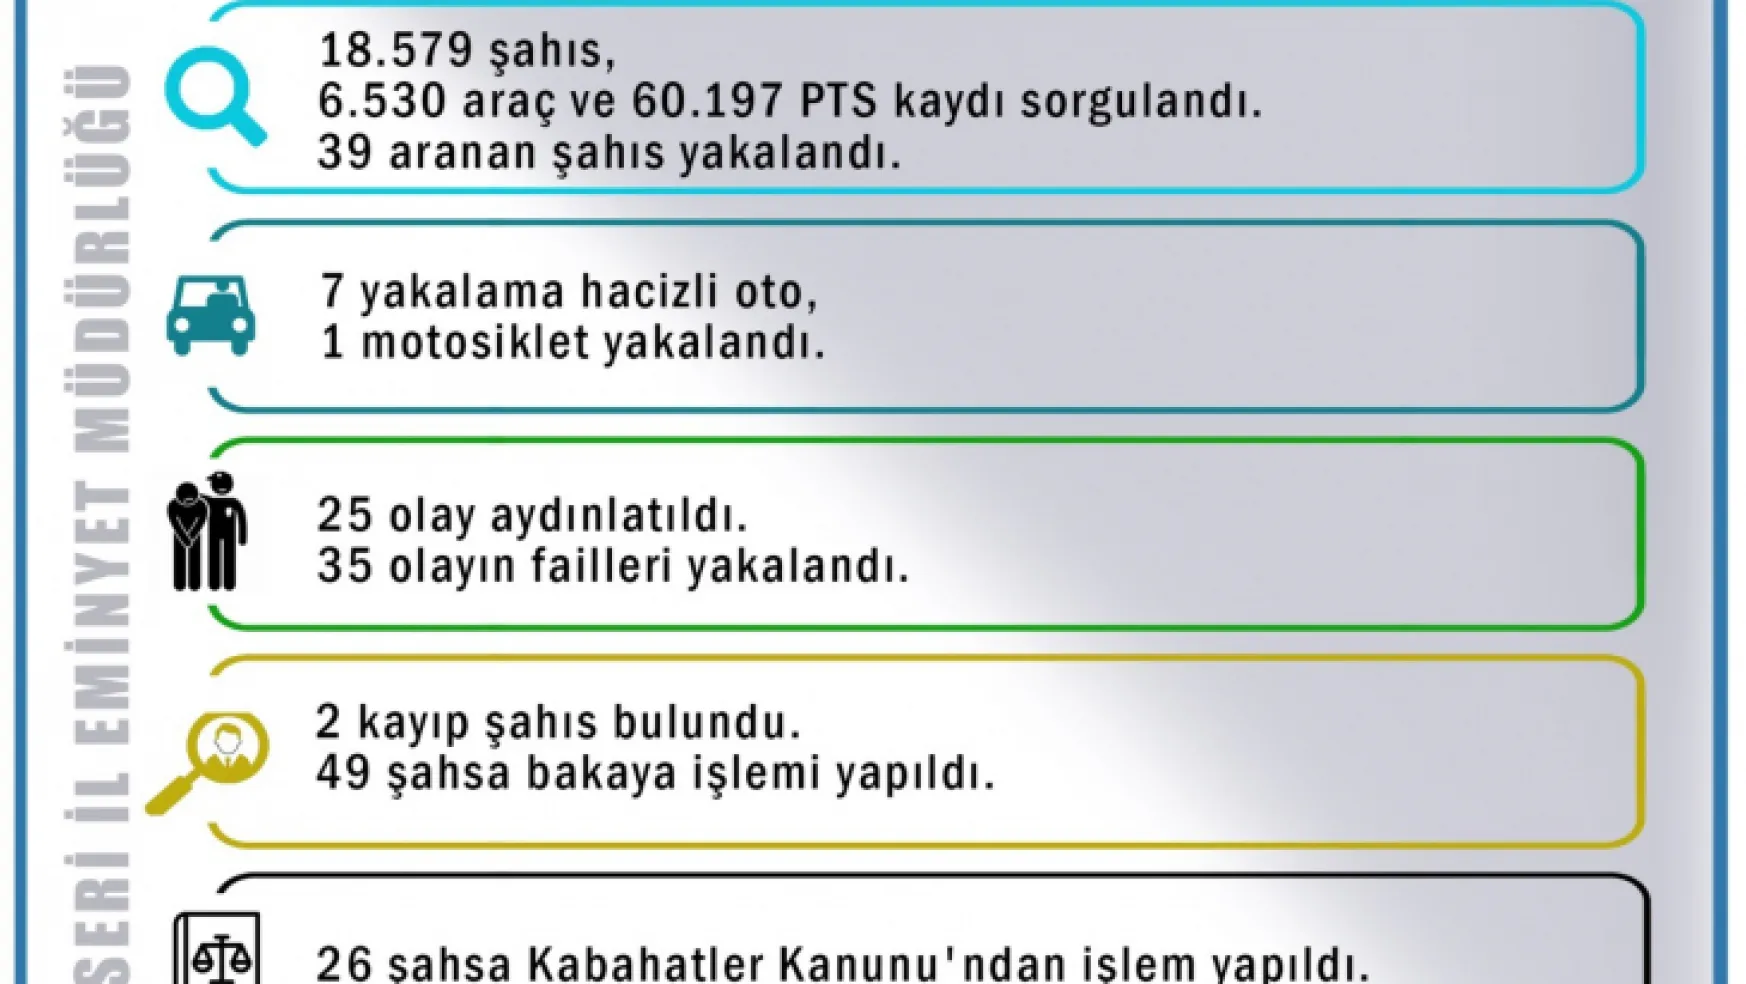 Kayseri'de 1 haftada 39 aranan şahıs yakalandı